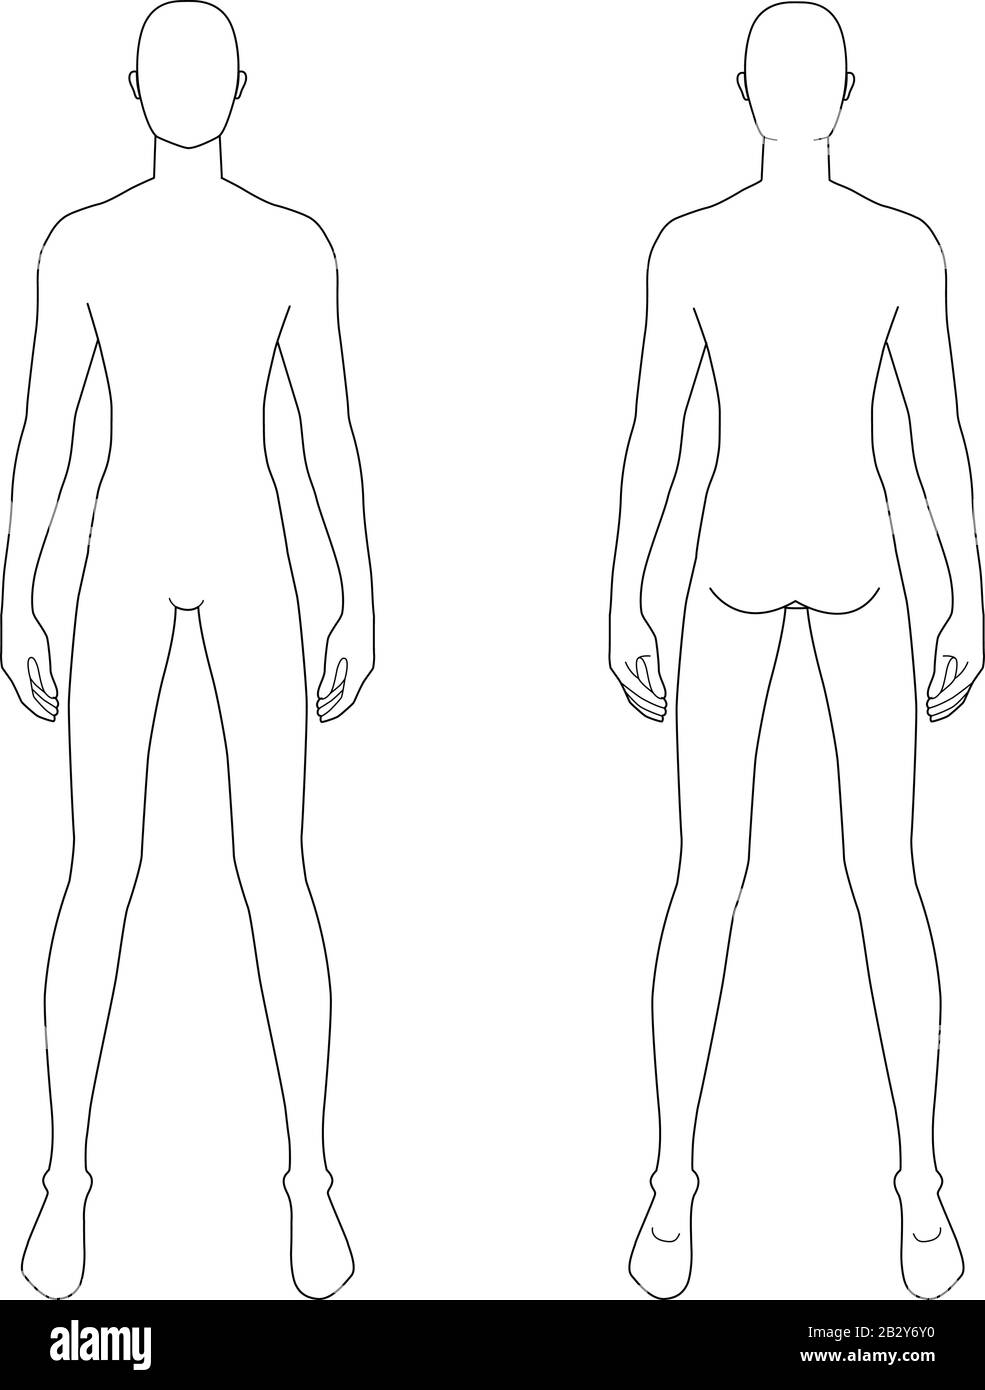 Modèle de mode d'hommes debout avec de larges jambes. 9 dimensions de tête pour le dessin technique. Les messieurs sont en vue avant et arrière. Silhouette vectorielle pour l'esquisse et l'illustration de mode. Illustration de Vecteur